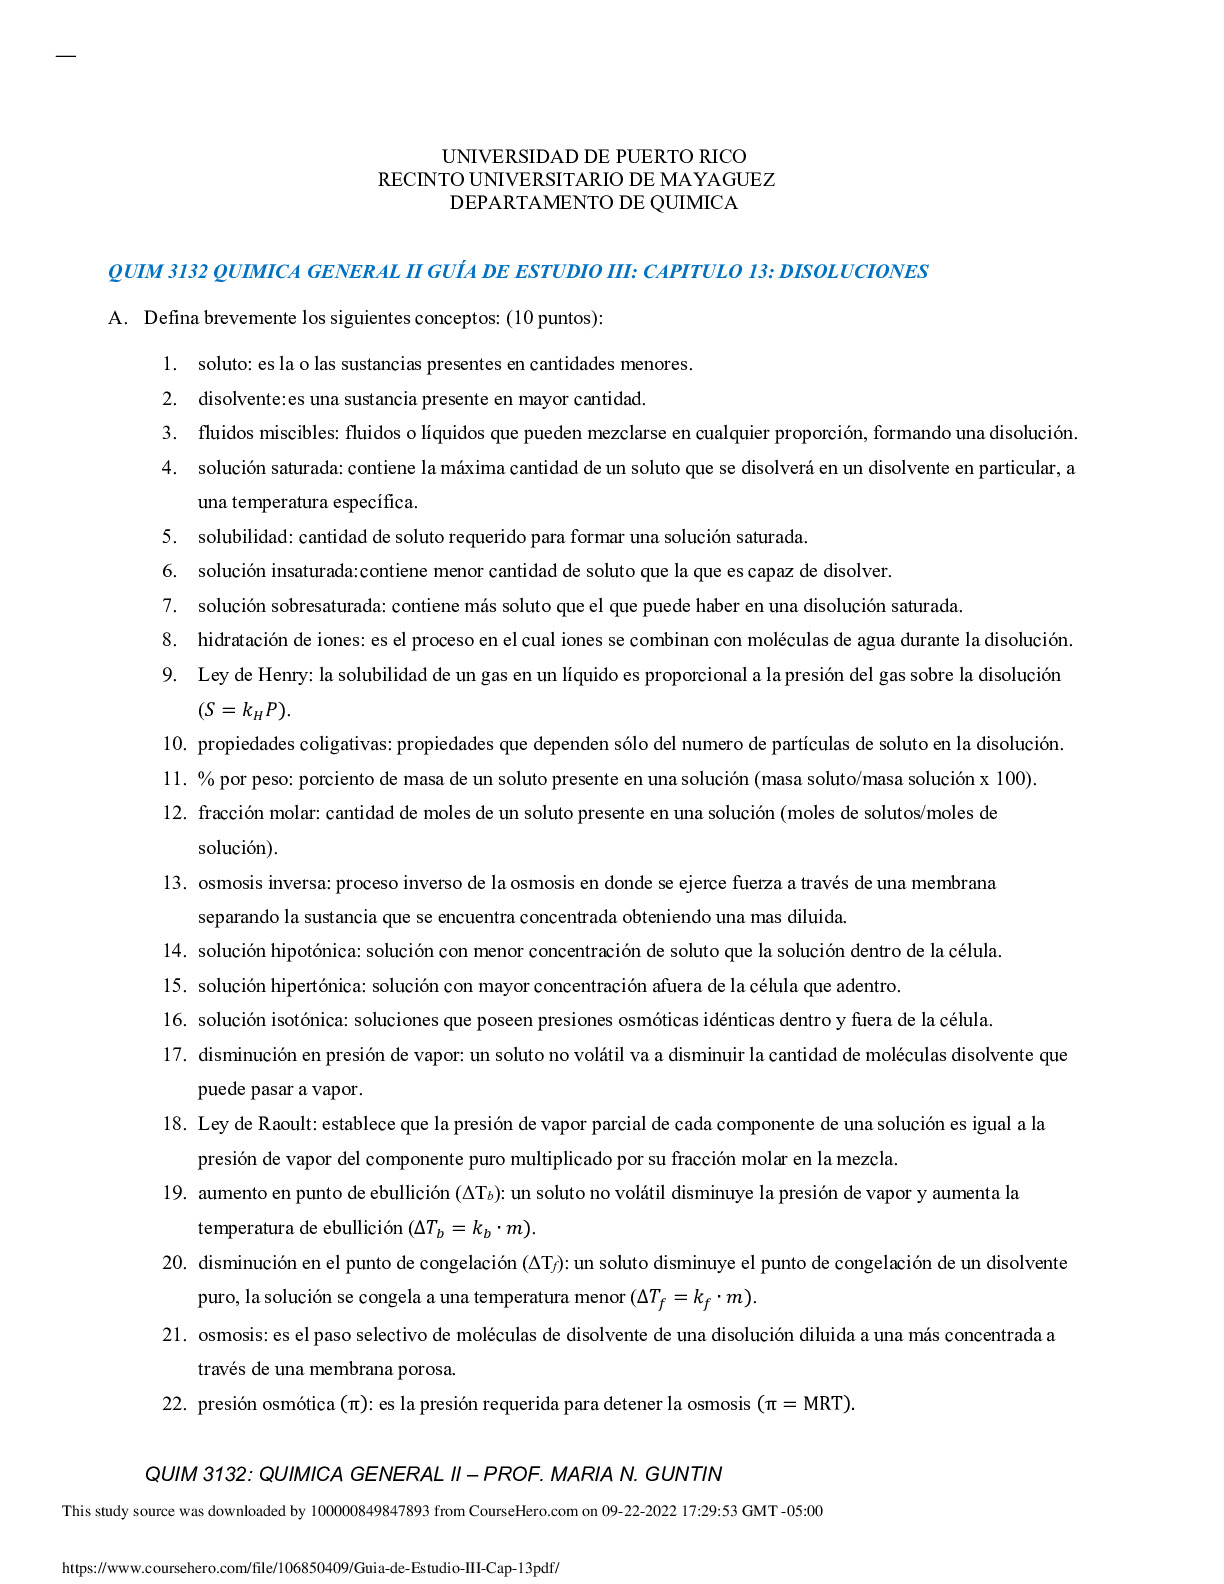 Guia_de_Estudio_III___Cap_13.pdf